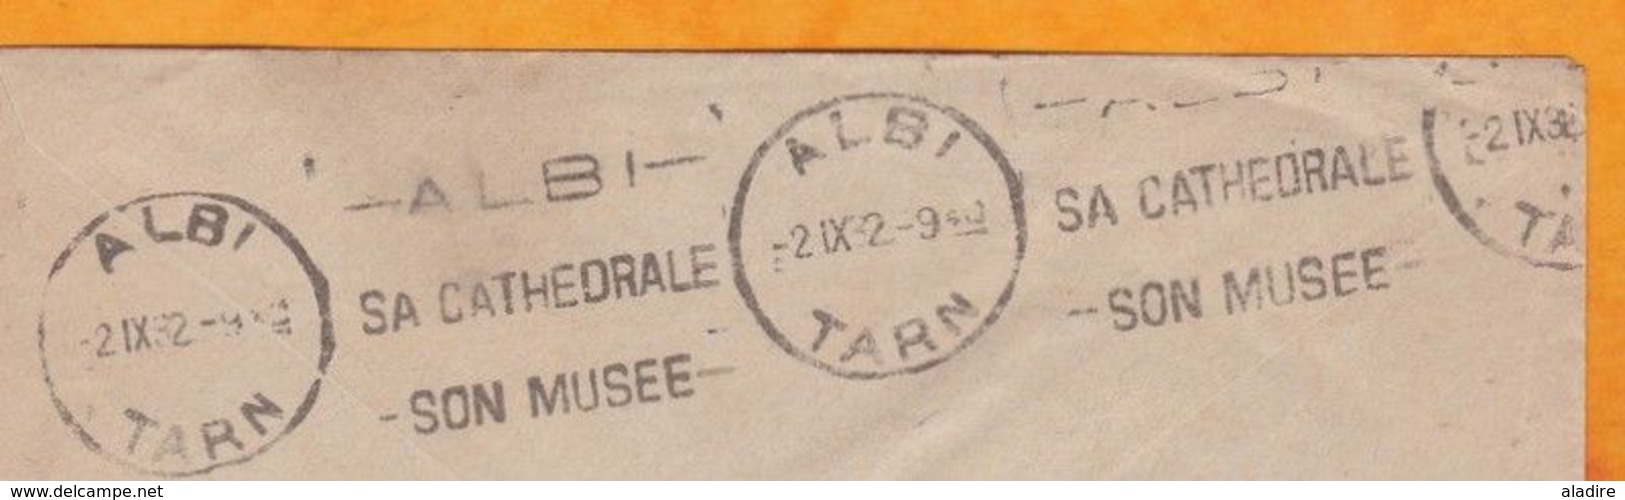 1932 - Enveloppe De Saigon Vers Albi, Tarn - Partie Le 4 Septembre - Arrivée Le 2 !!! - Flamme Cathédrale Musée - Covers & Documents